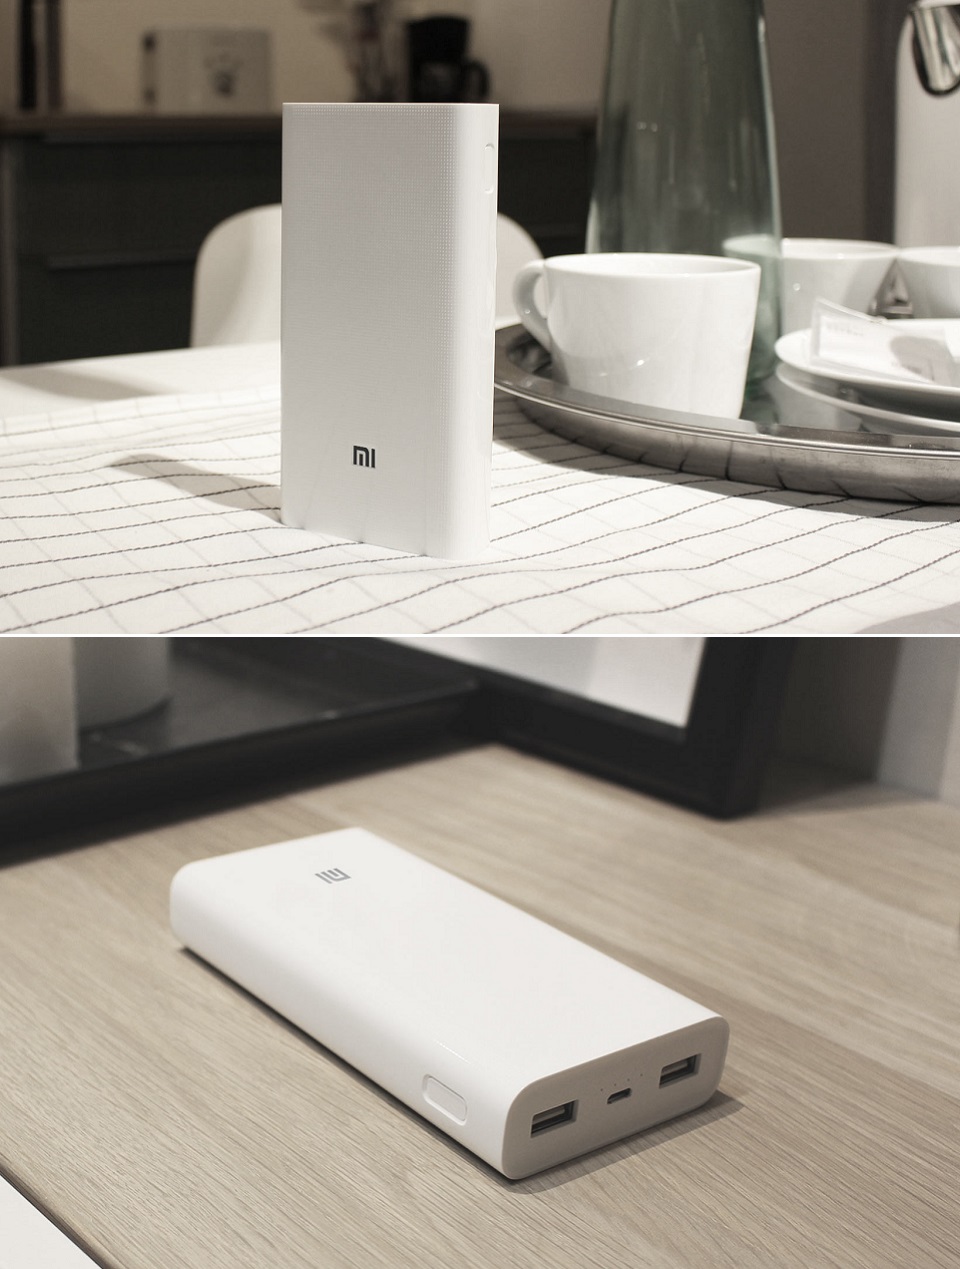 Універсальна батарея Xiaomi Mi power bank 2 White 20000mAh на різних поверхнях